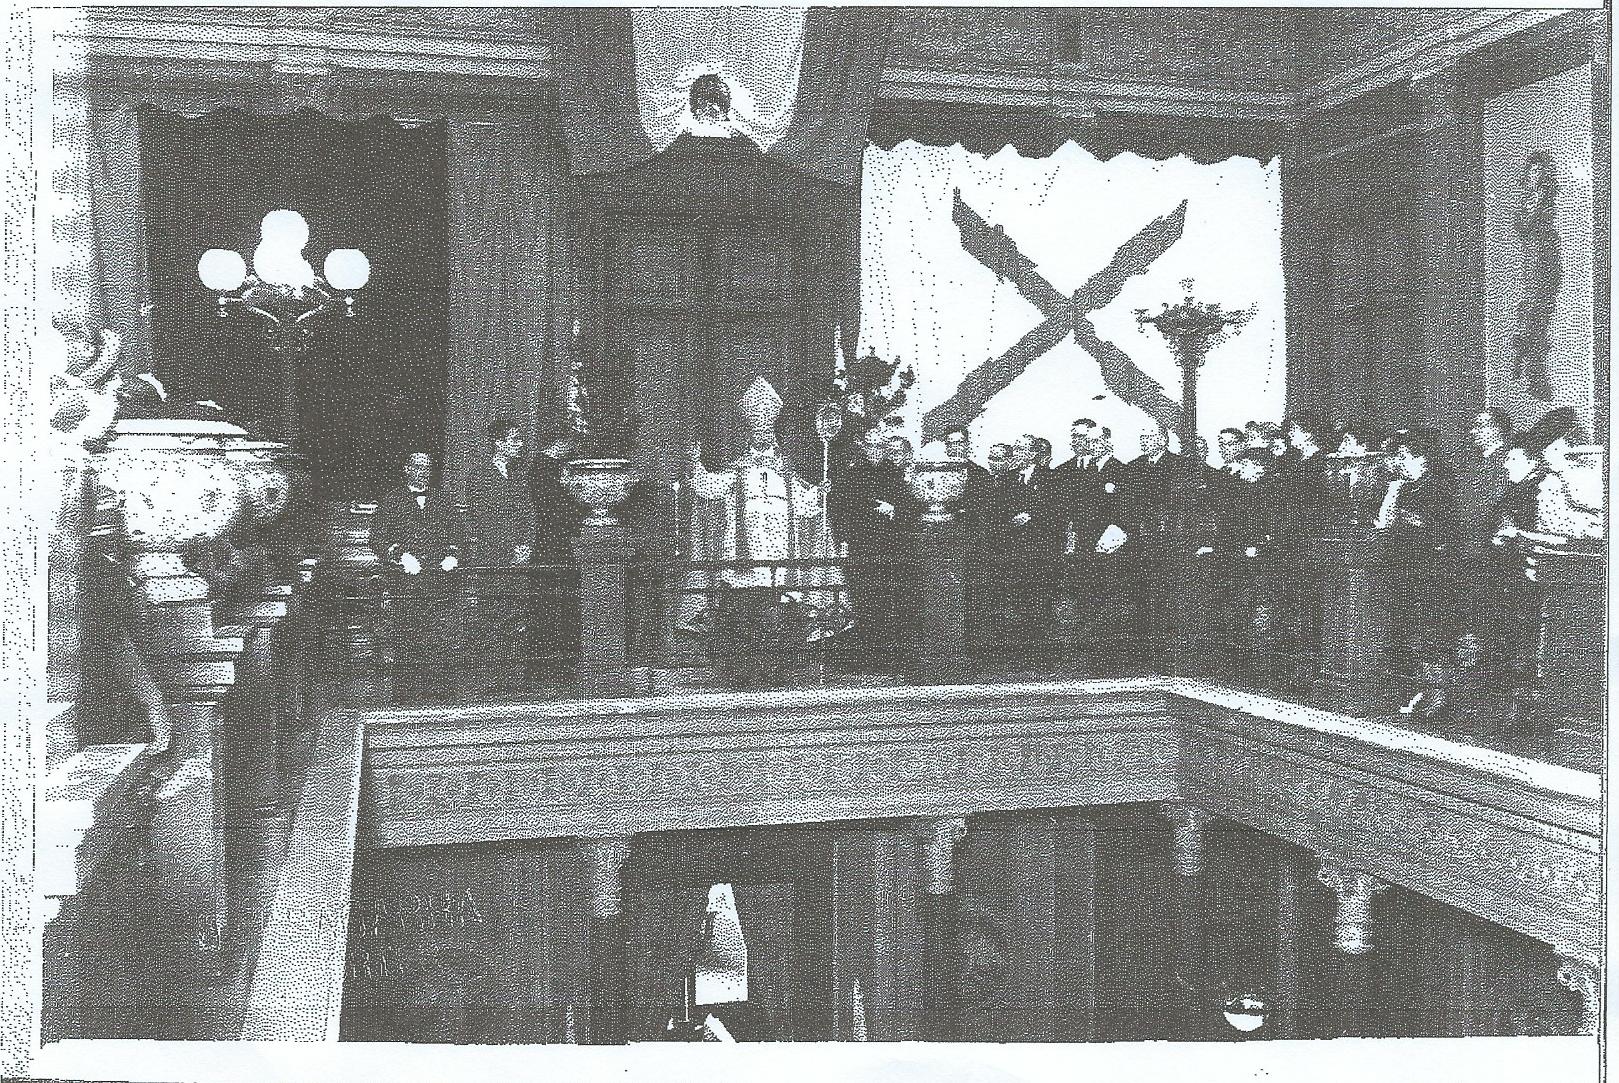 Solemne Acto de entronización del Sagrado Corazón de Jesús en el Colegio de abogados de Barcelona el 31 de mayo de 1940.